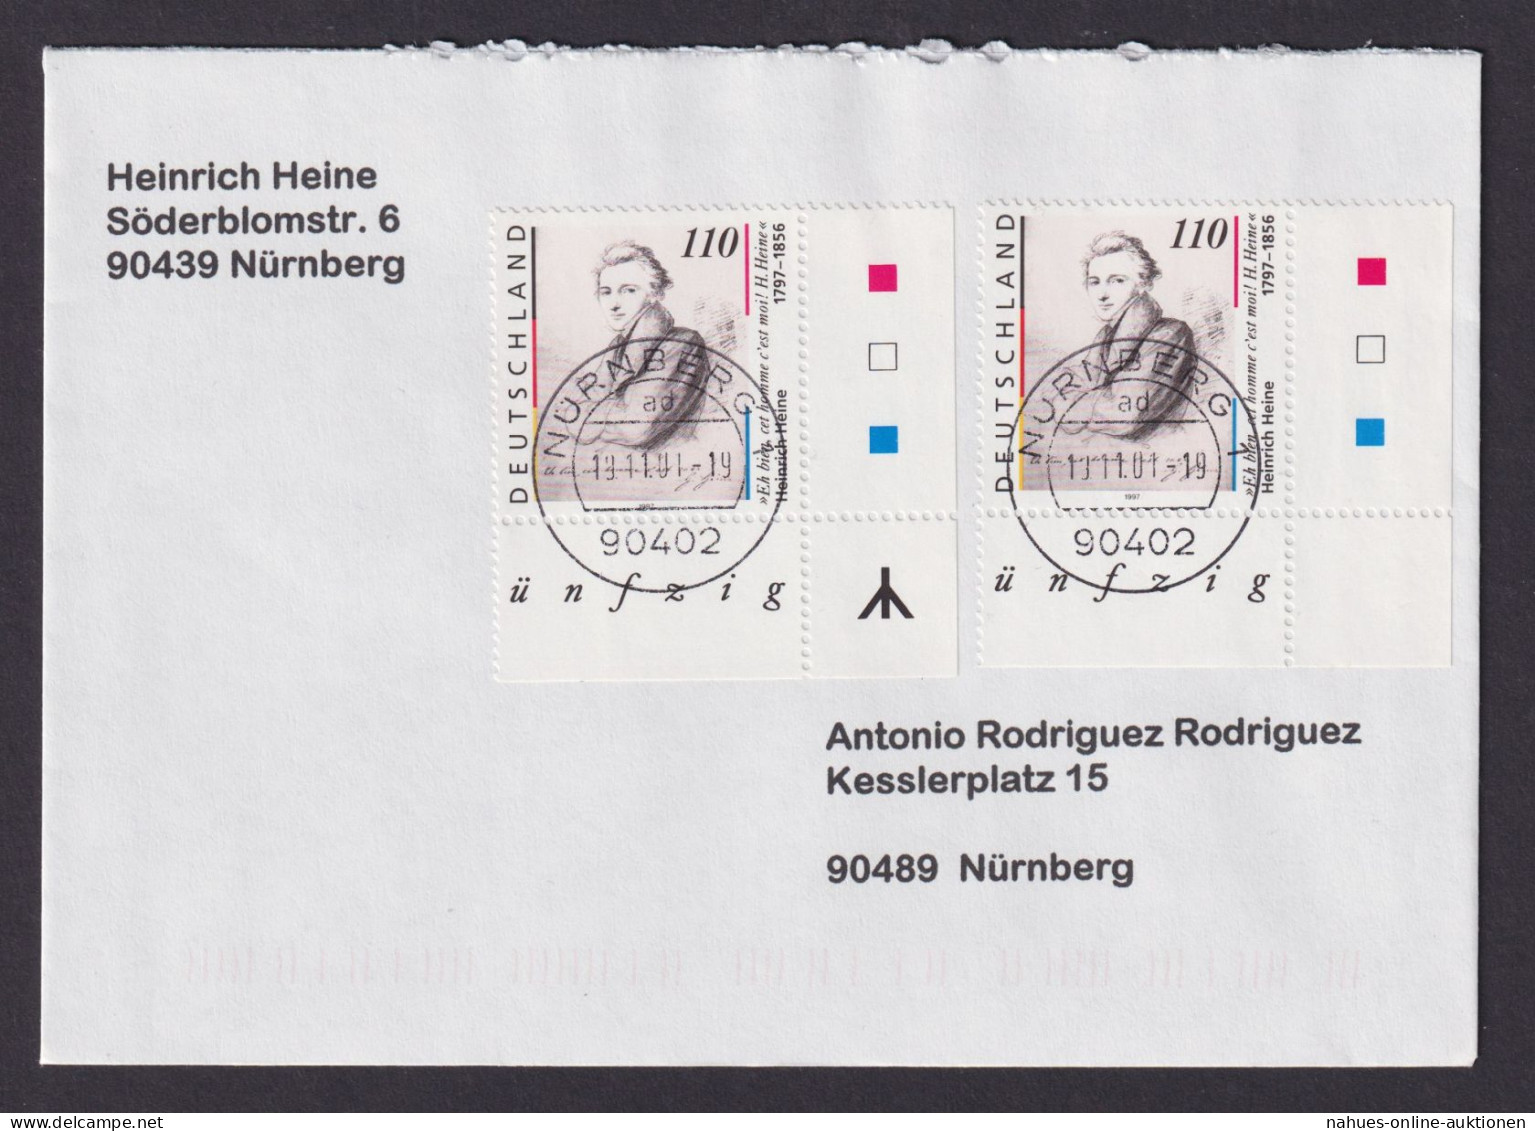 Bund Heine Bogenecke Eckrand Mit + Ohne Runen 1962 I+II Nürnberg Brief - Lettres & Documents